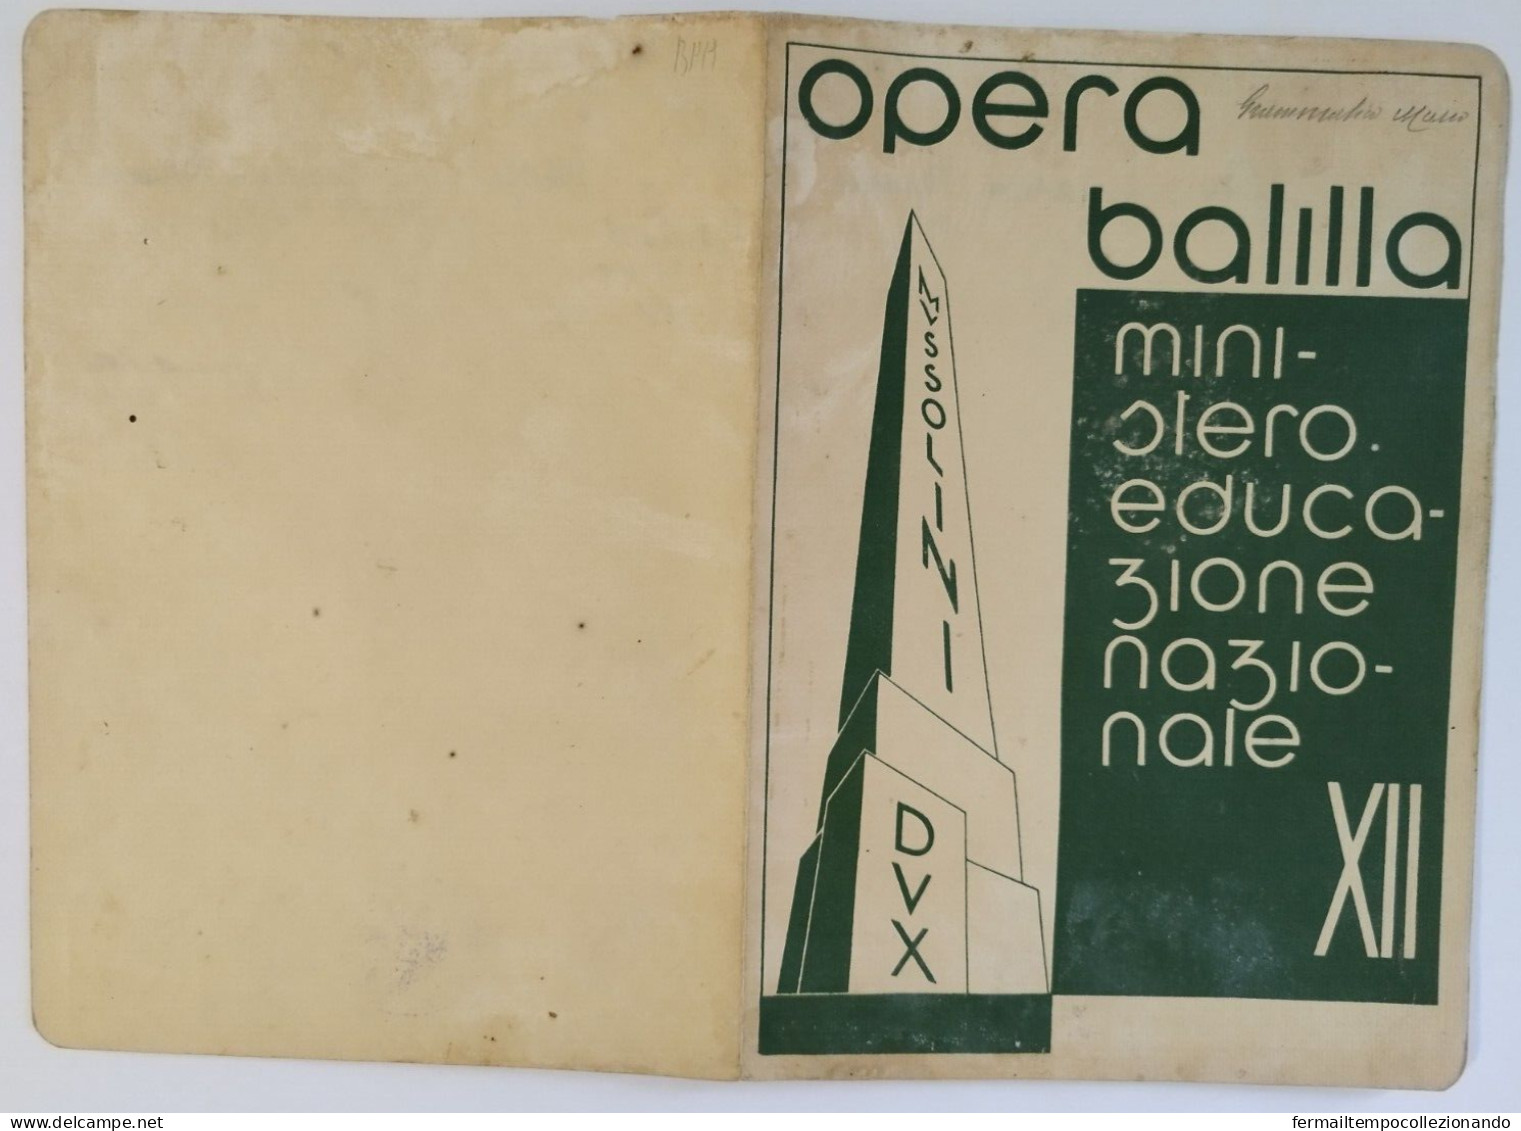 Bp19 Pagella Fascista Opera Balilla Ministero Educazione Nazionale Roma 1934 - Diploma & School Reports